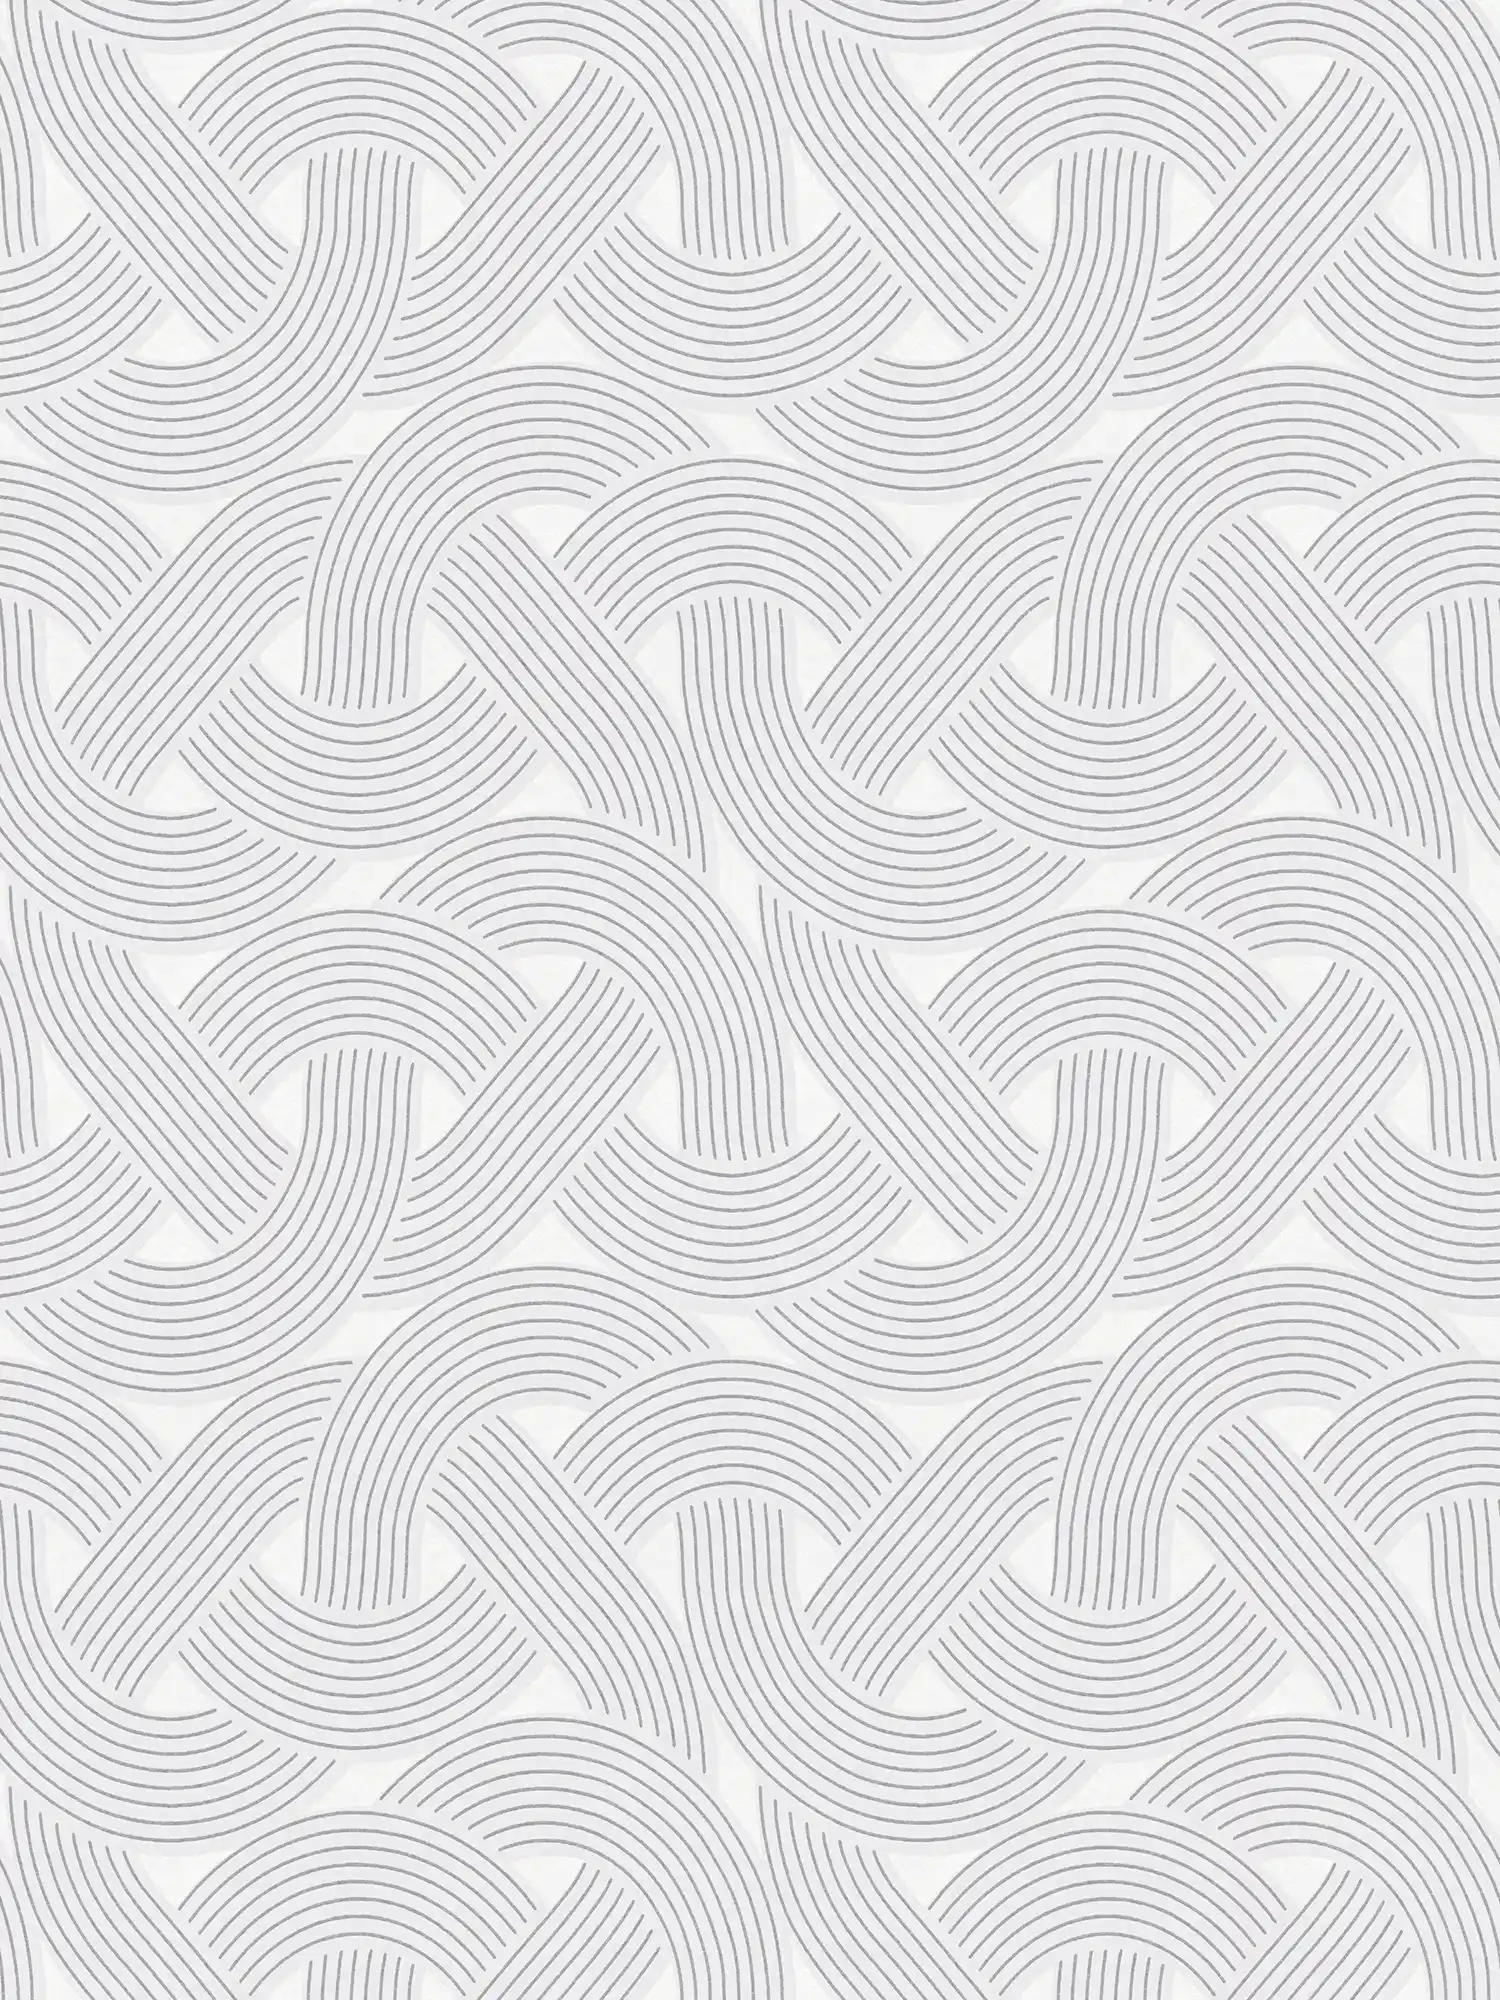 Vliesbehang in grafisch lijnenspel - grijs, zilver, wit
